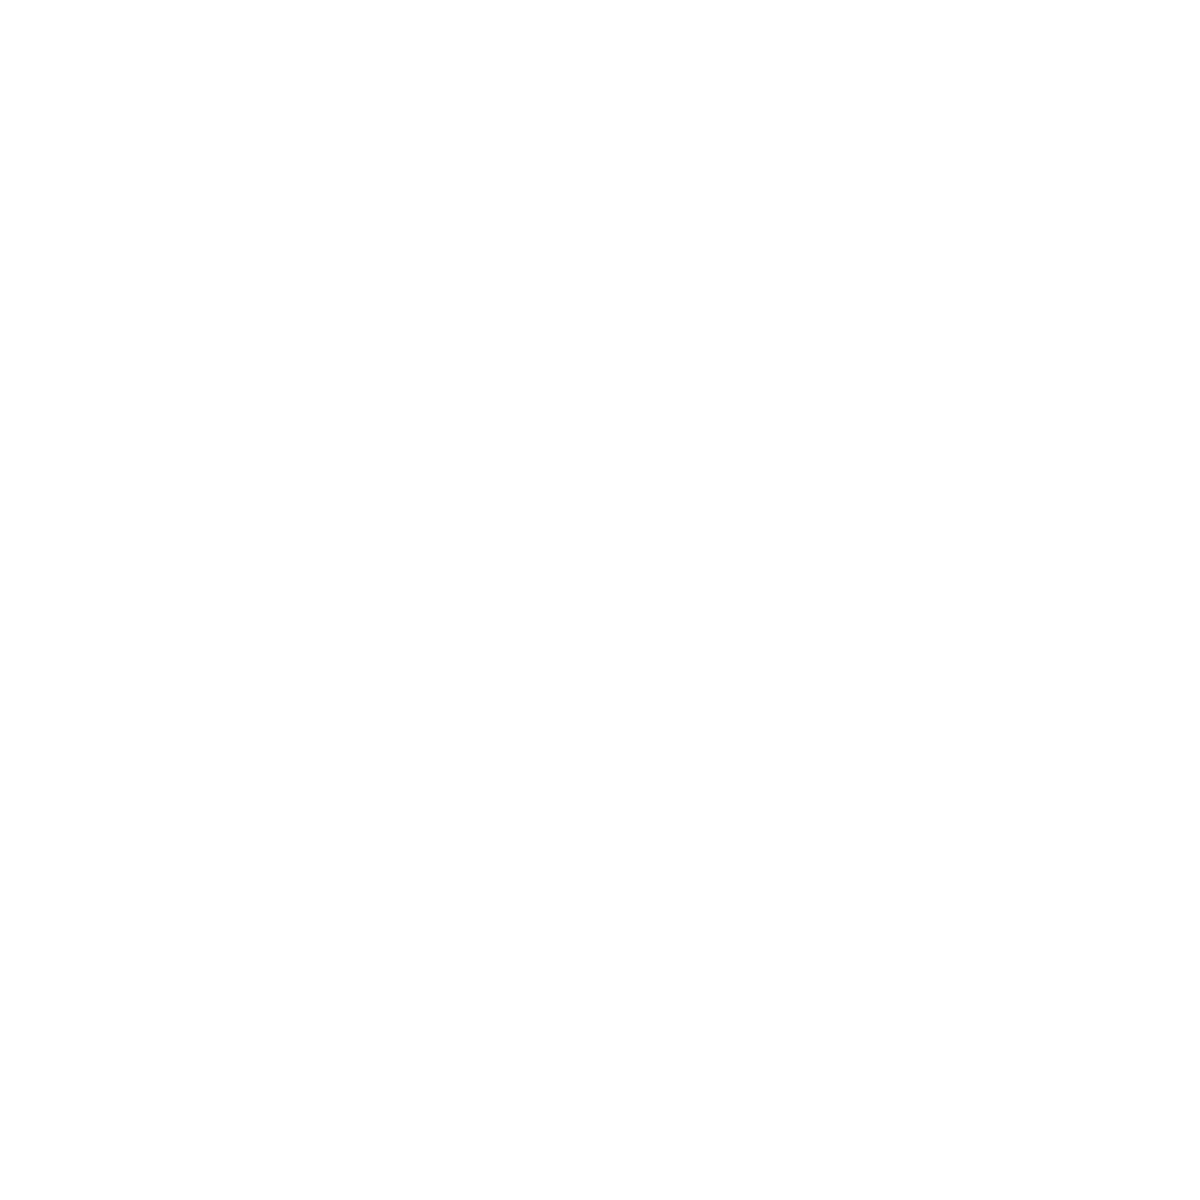 QuickCoderz.com